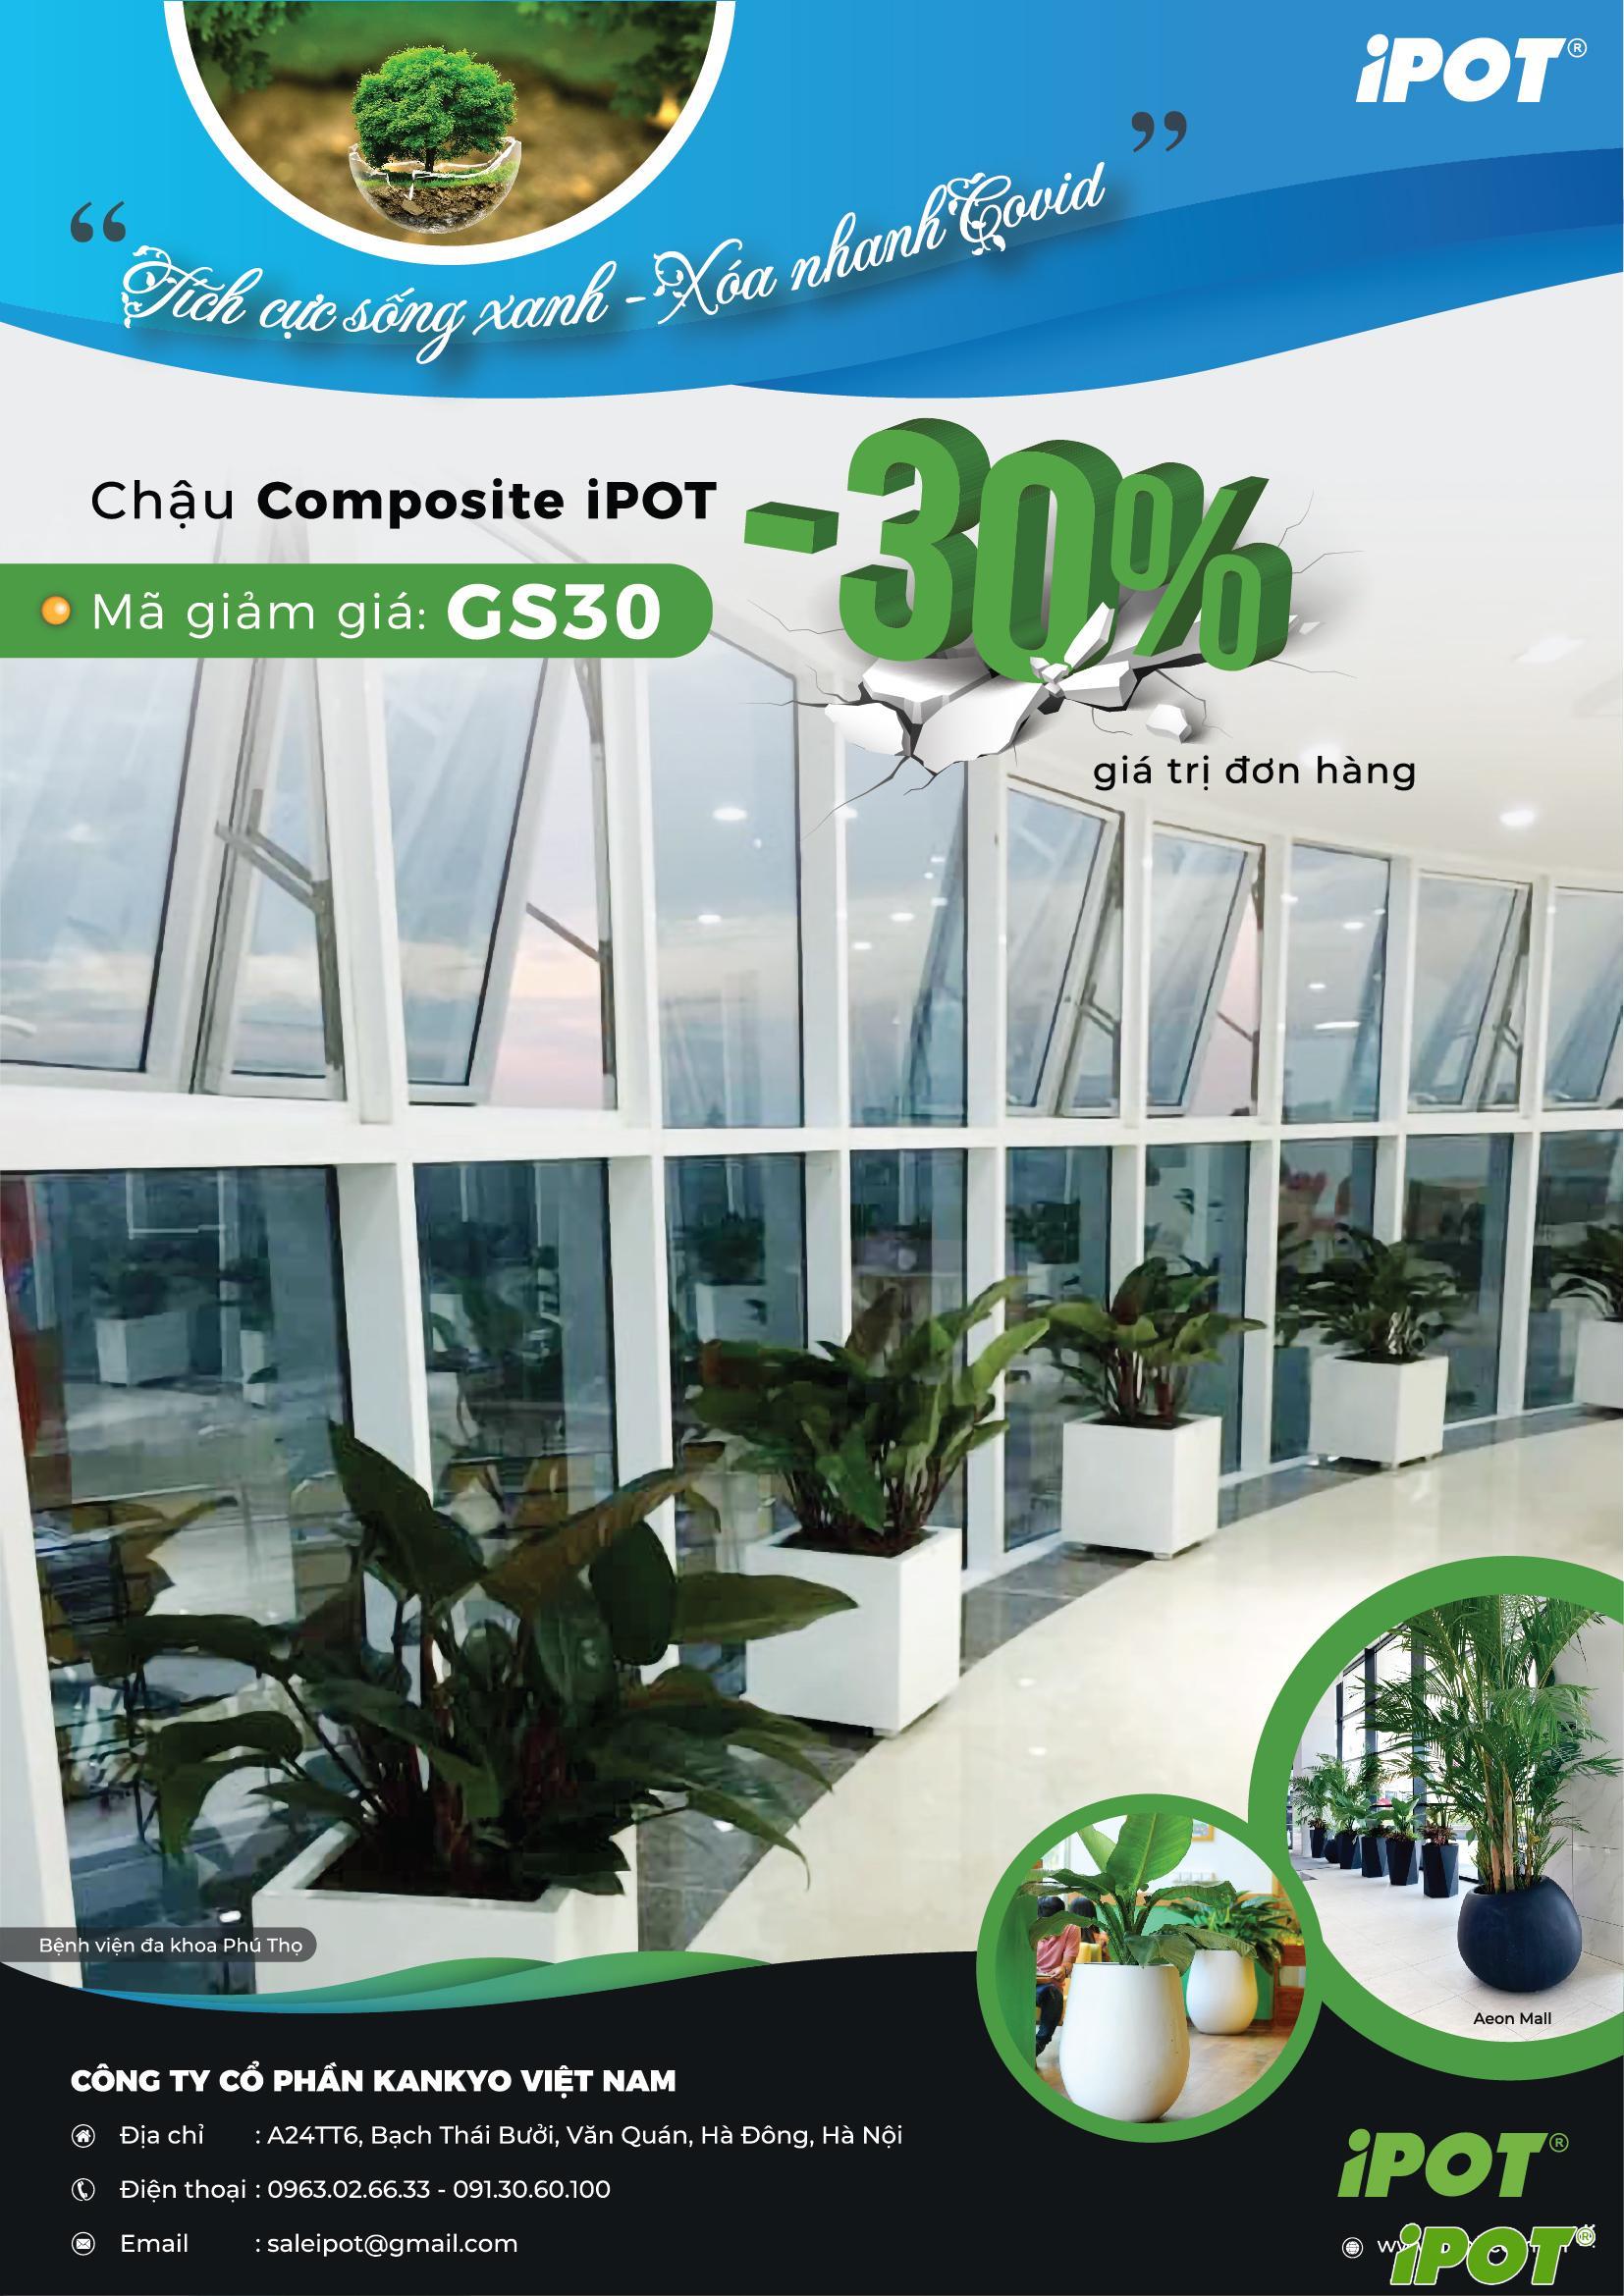 Tích cực sống xanh, xua nhanh Covid / Ưu đãi lên tới 30% khi mua chậu Composite tại iPOT